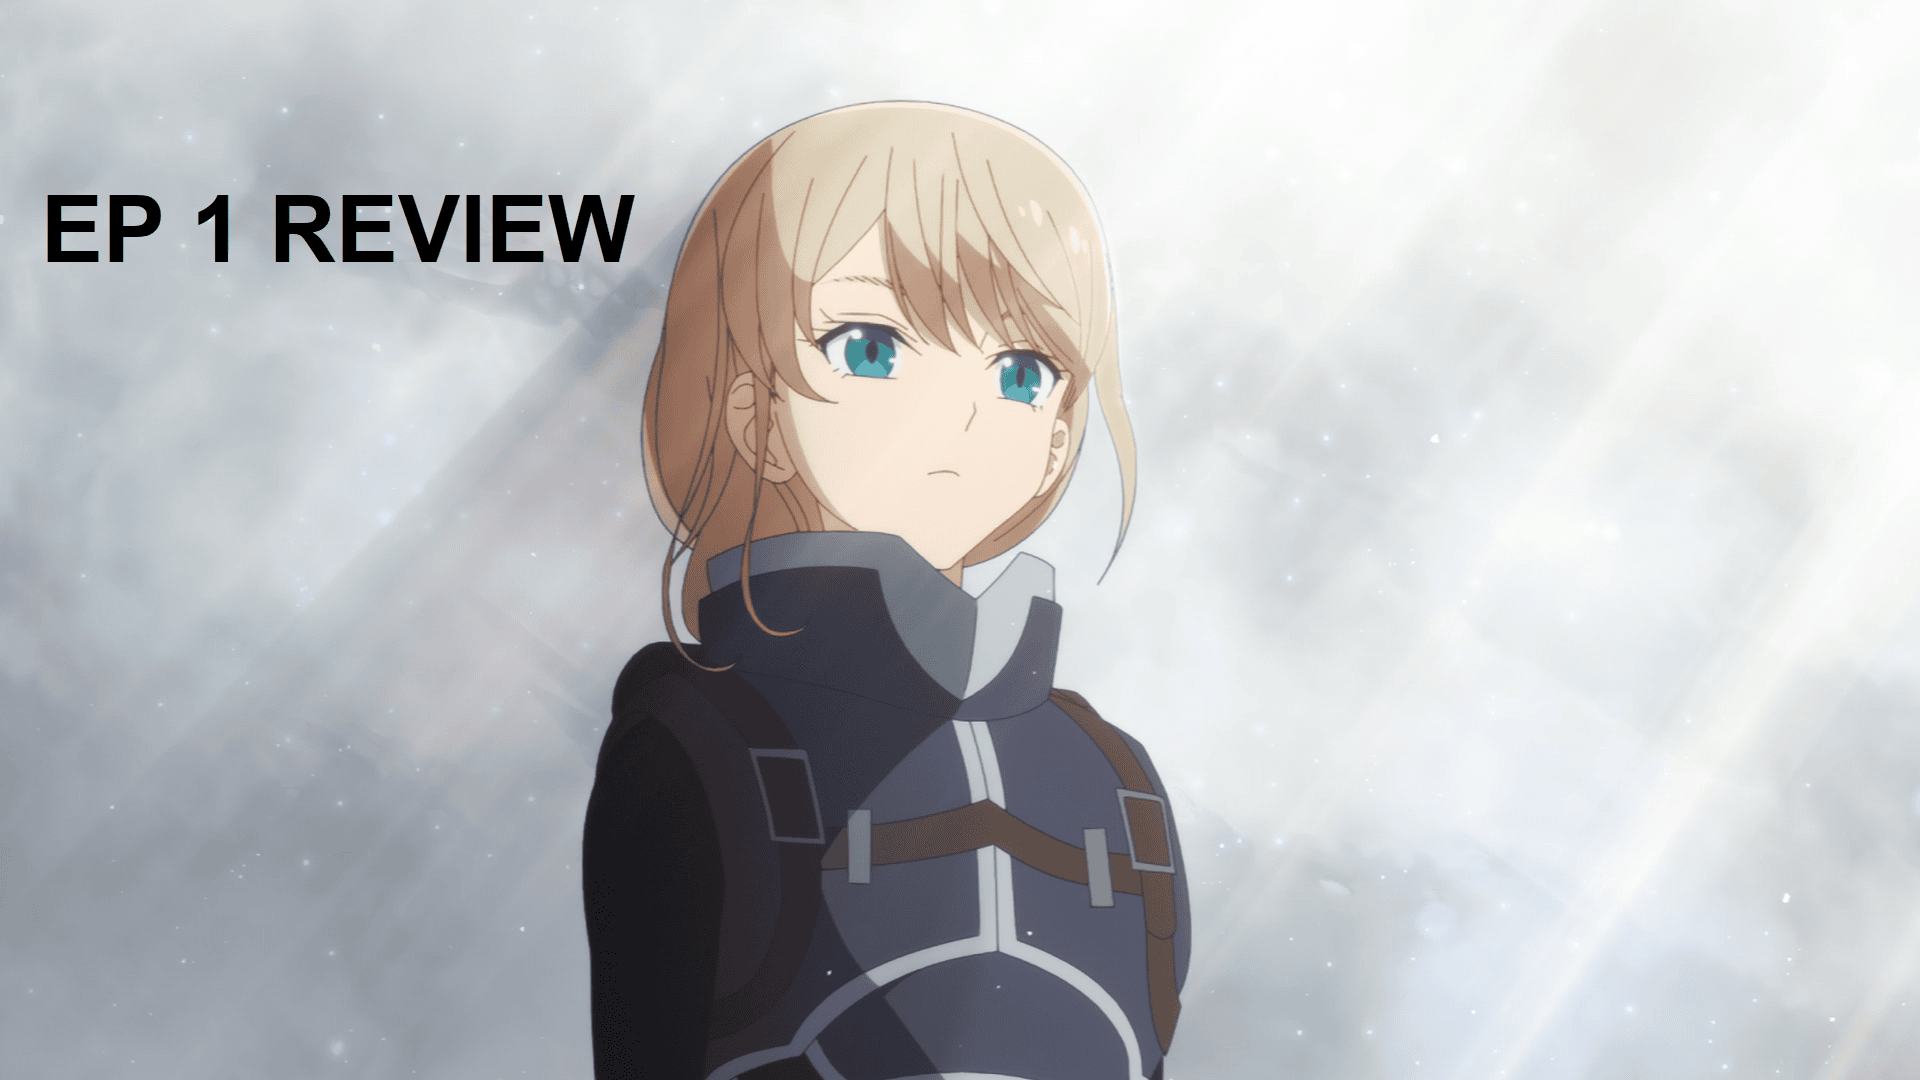 Spoilers] Kyoukai No Kanata Rewatch - Episode 1 (Discussion) : r/anime